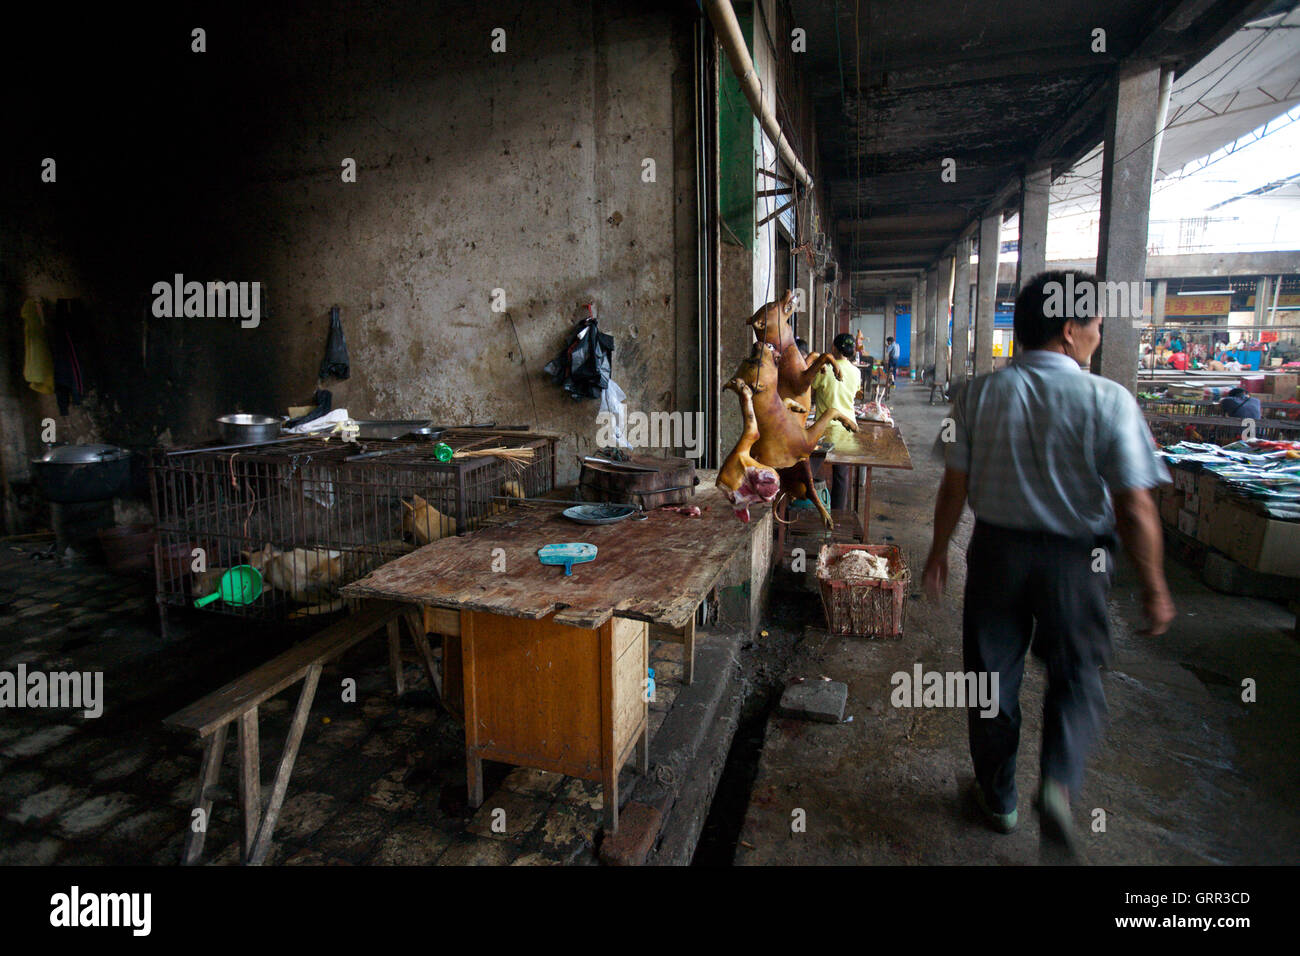 La viande de chien est suspendu à la vente dans un marché en Yangshou, Chine, tandis que les chiens attendent leur destin dans une cage derrière. Les chiens s'est noyé avant d'être bouilli. Banque D'Images